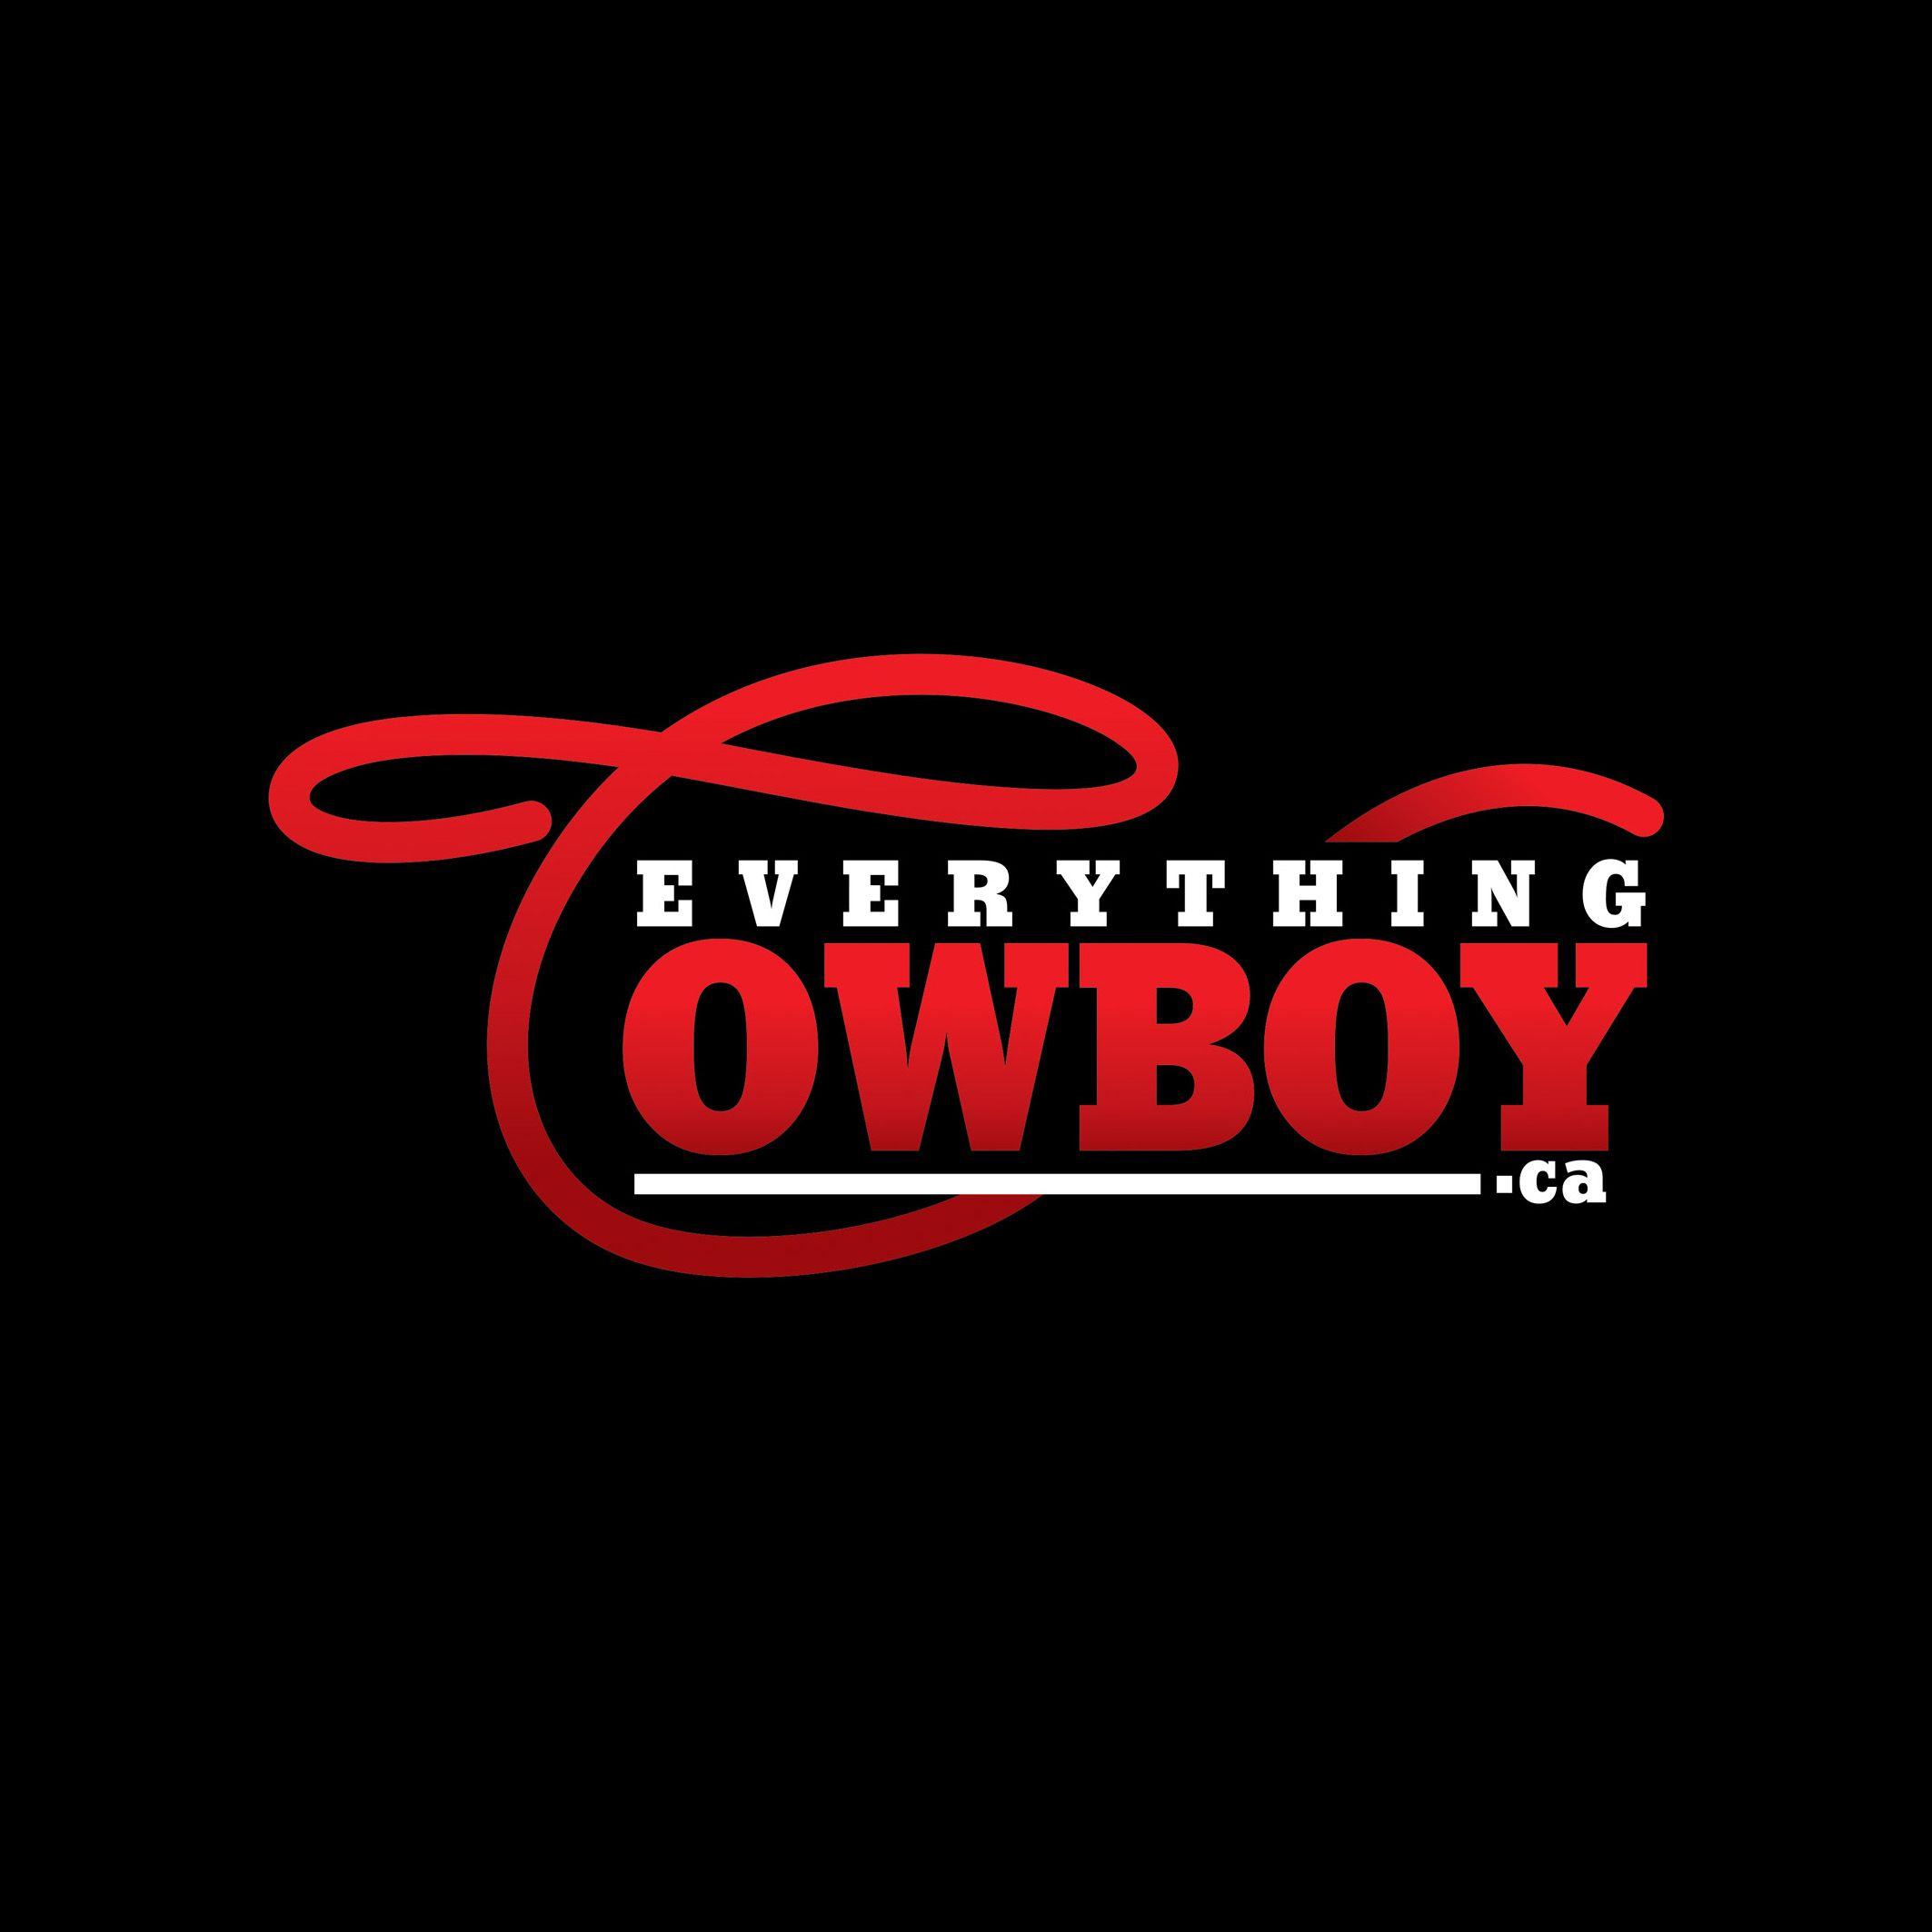 Red Cowboy Logo - Free Cowboy Logo, Download Free